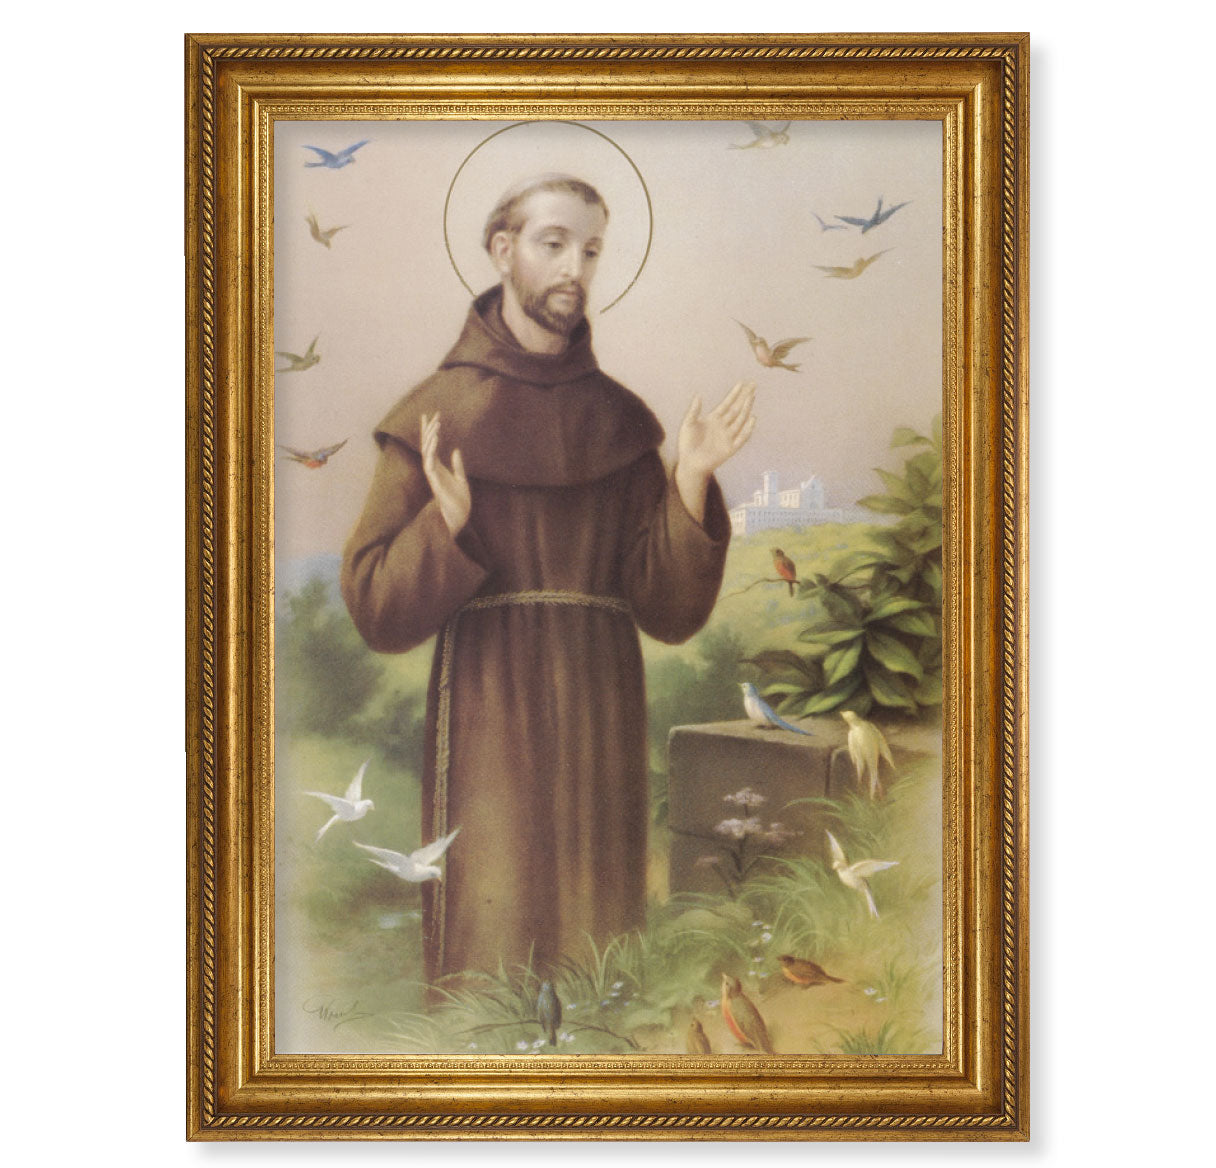 St. Francis Antique Gold-Leaf Framed Art